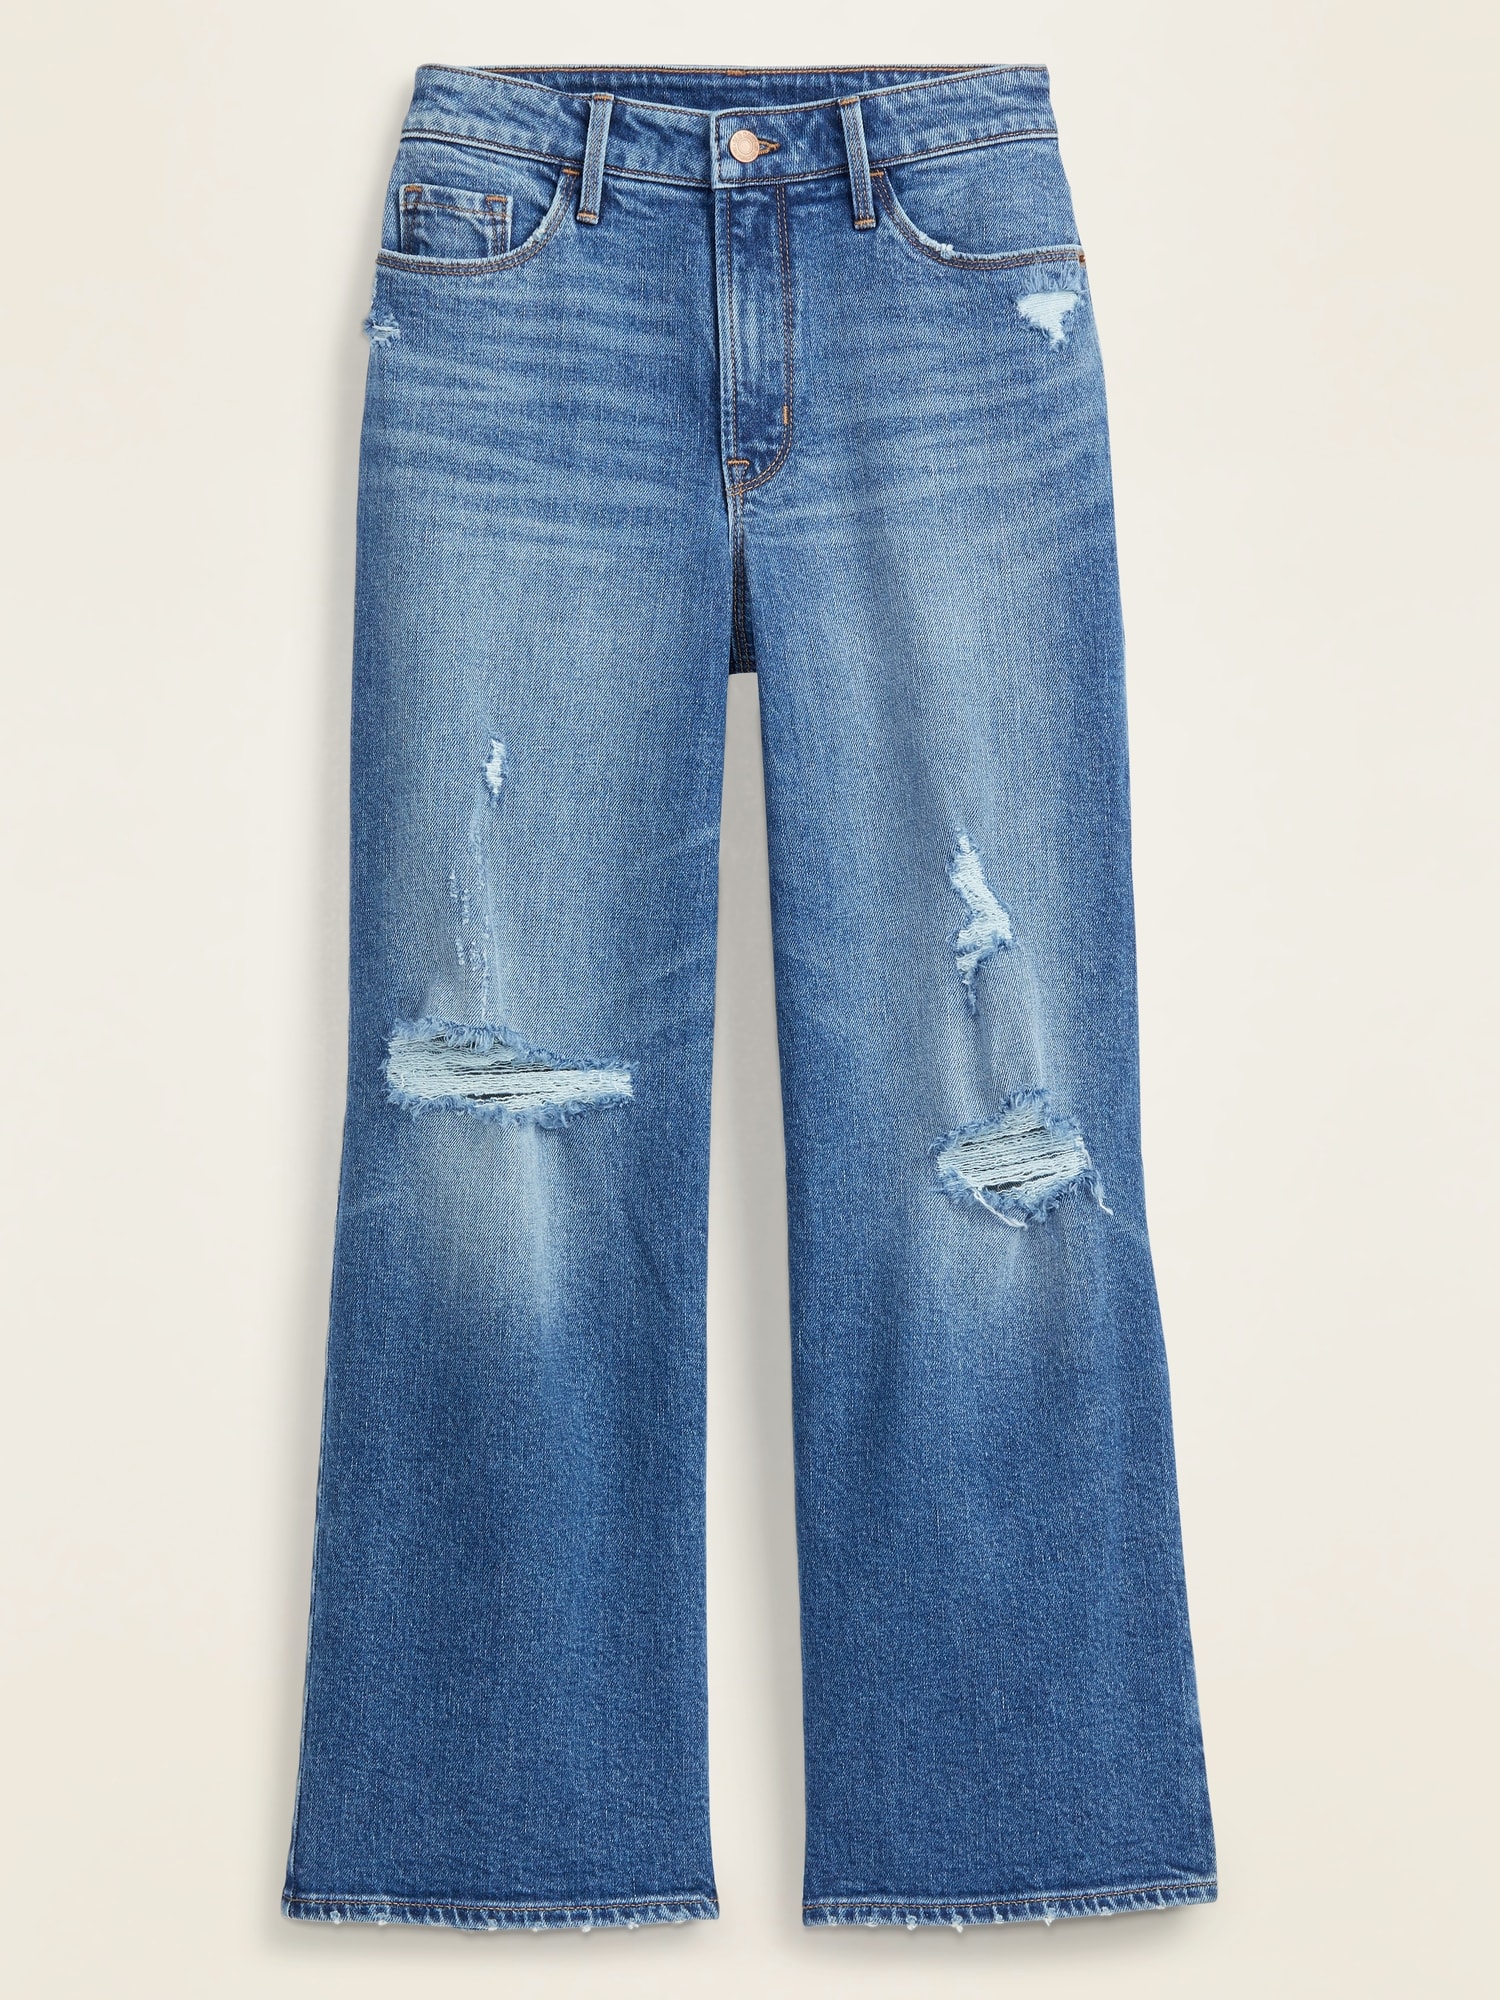 wide leg jeans online